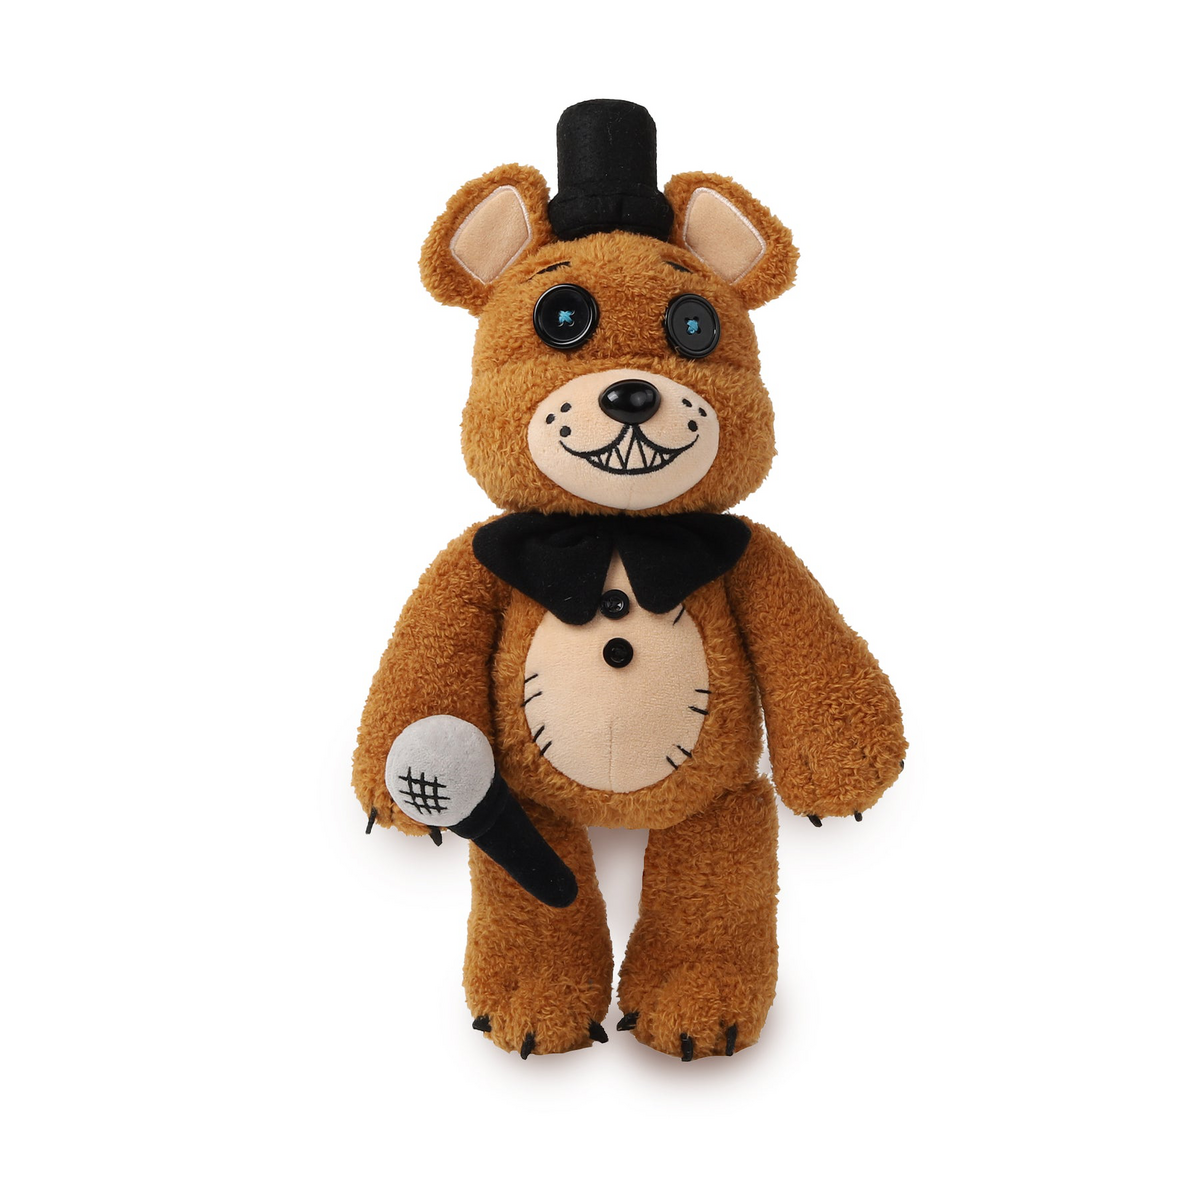 FNAF Five Nights at Freddy's Plushie Toy 7 Plush Bear Foxy Bonnie Chica